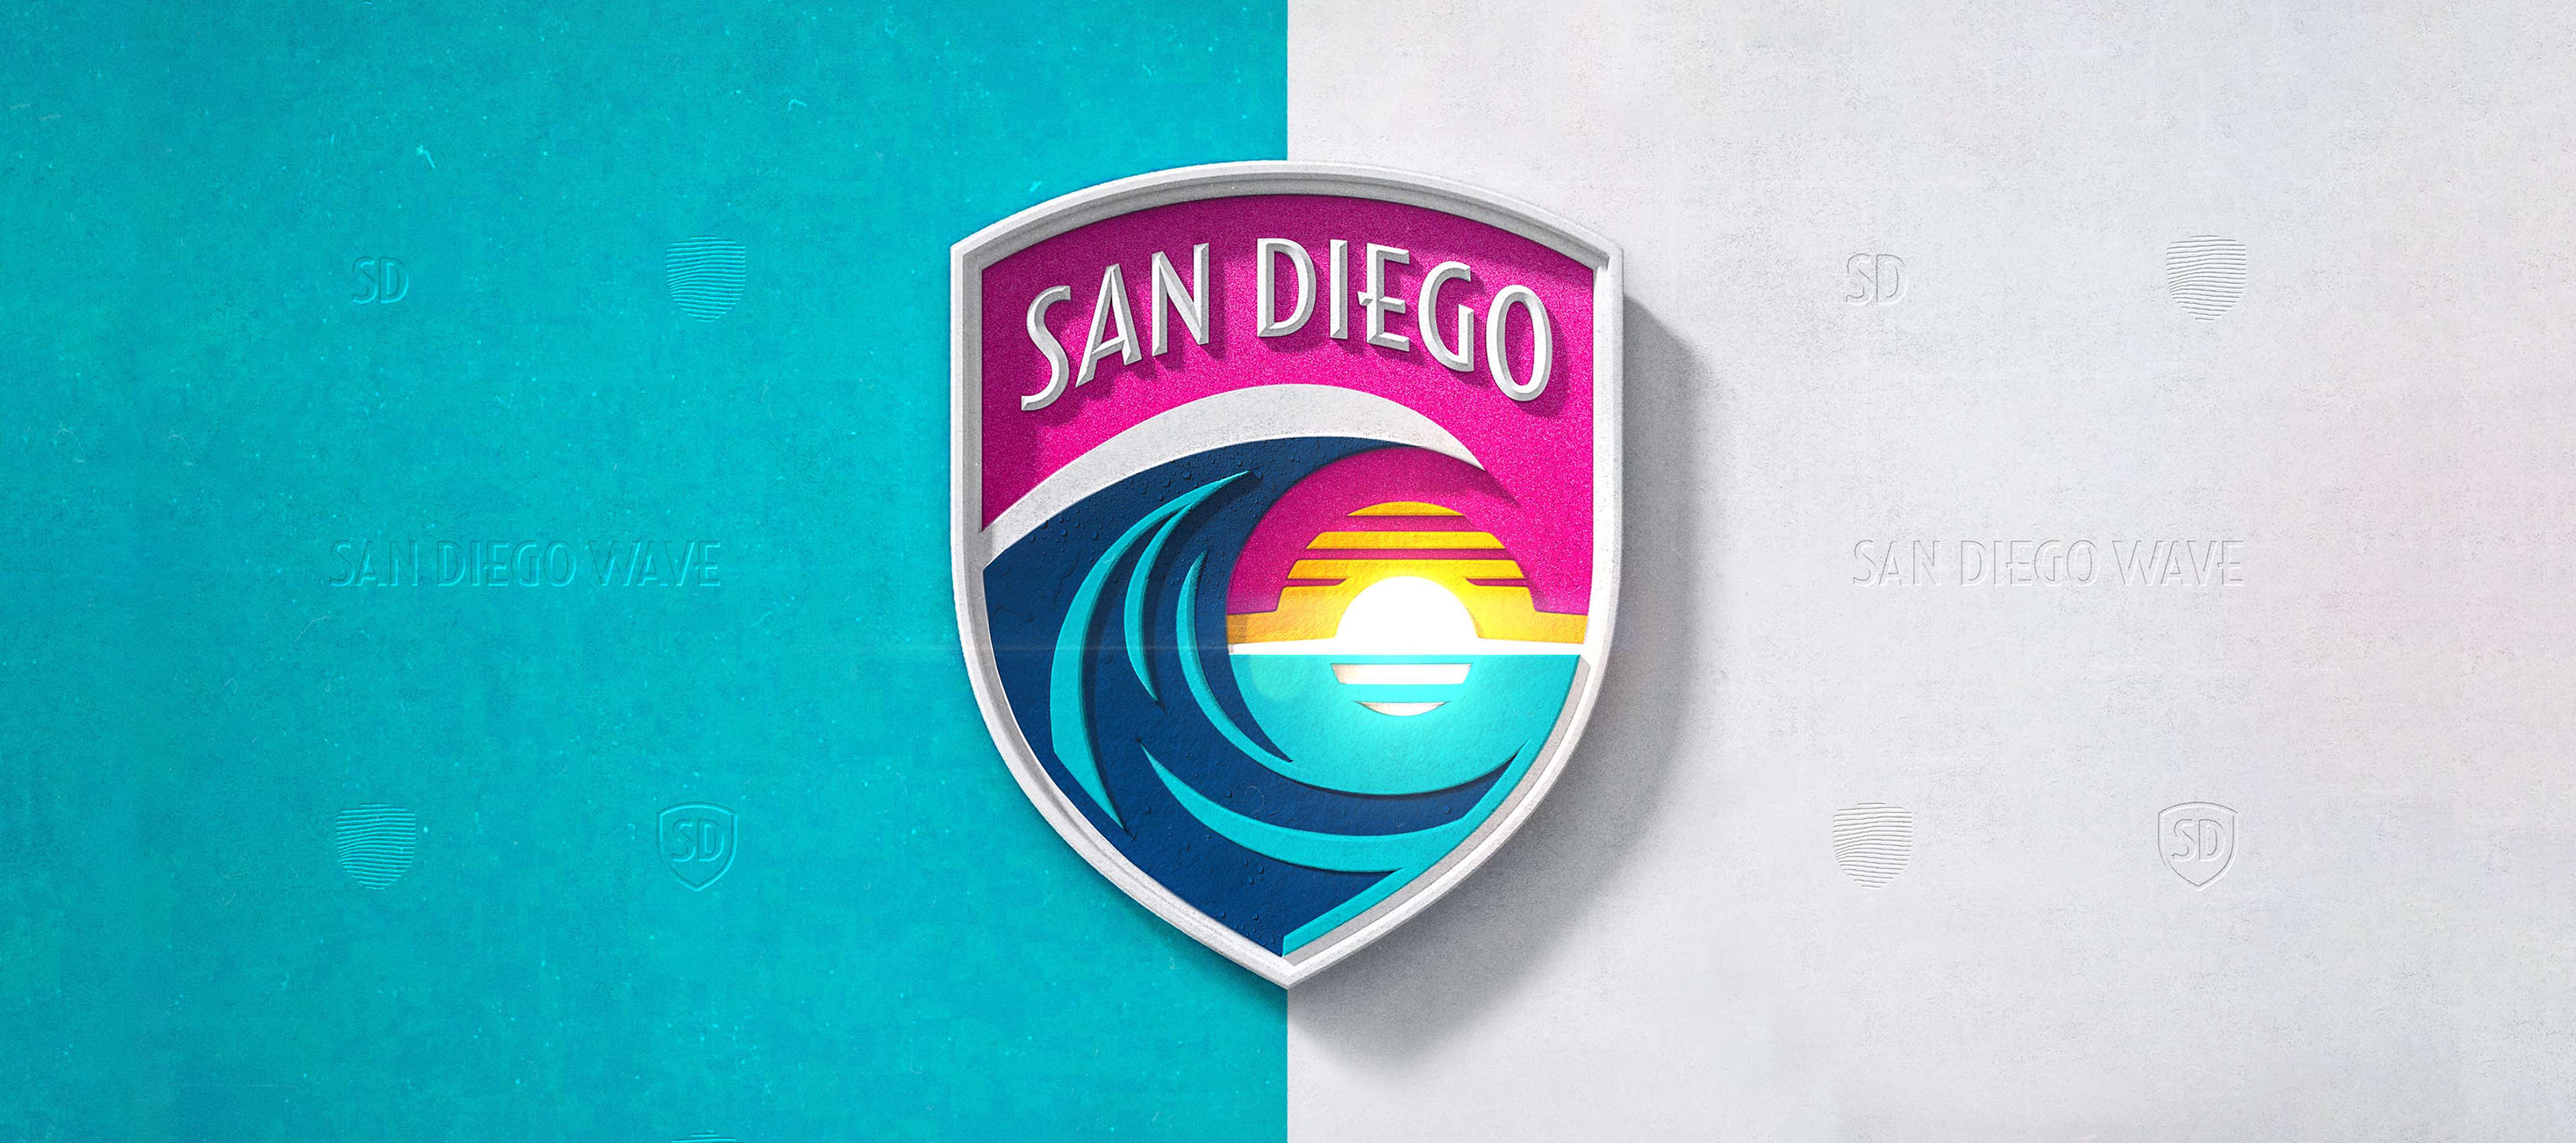 San Diego Wave FC. Brand Identity